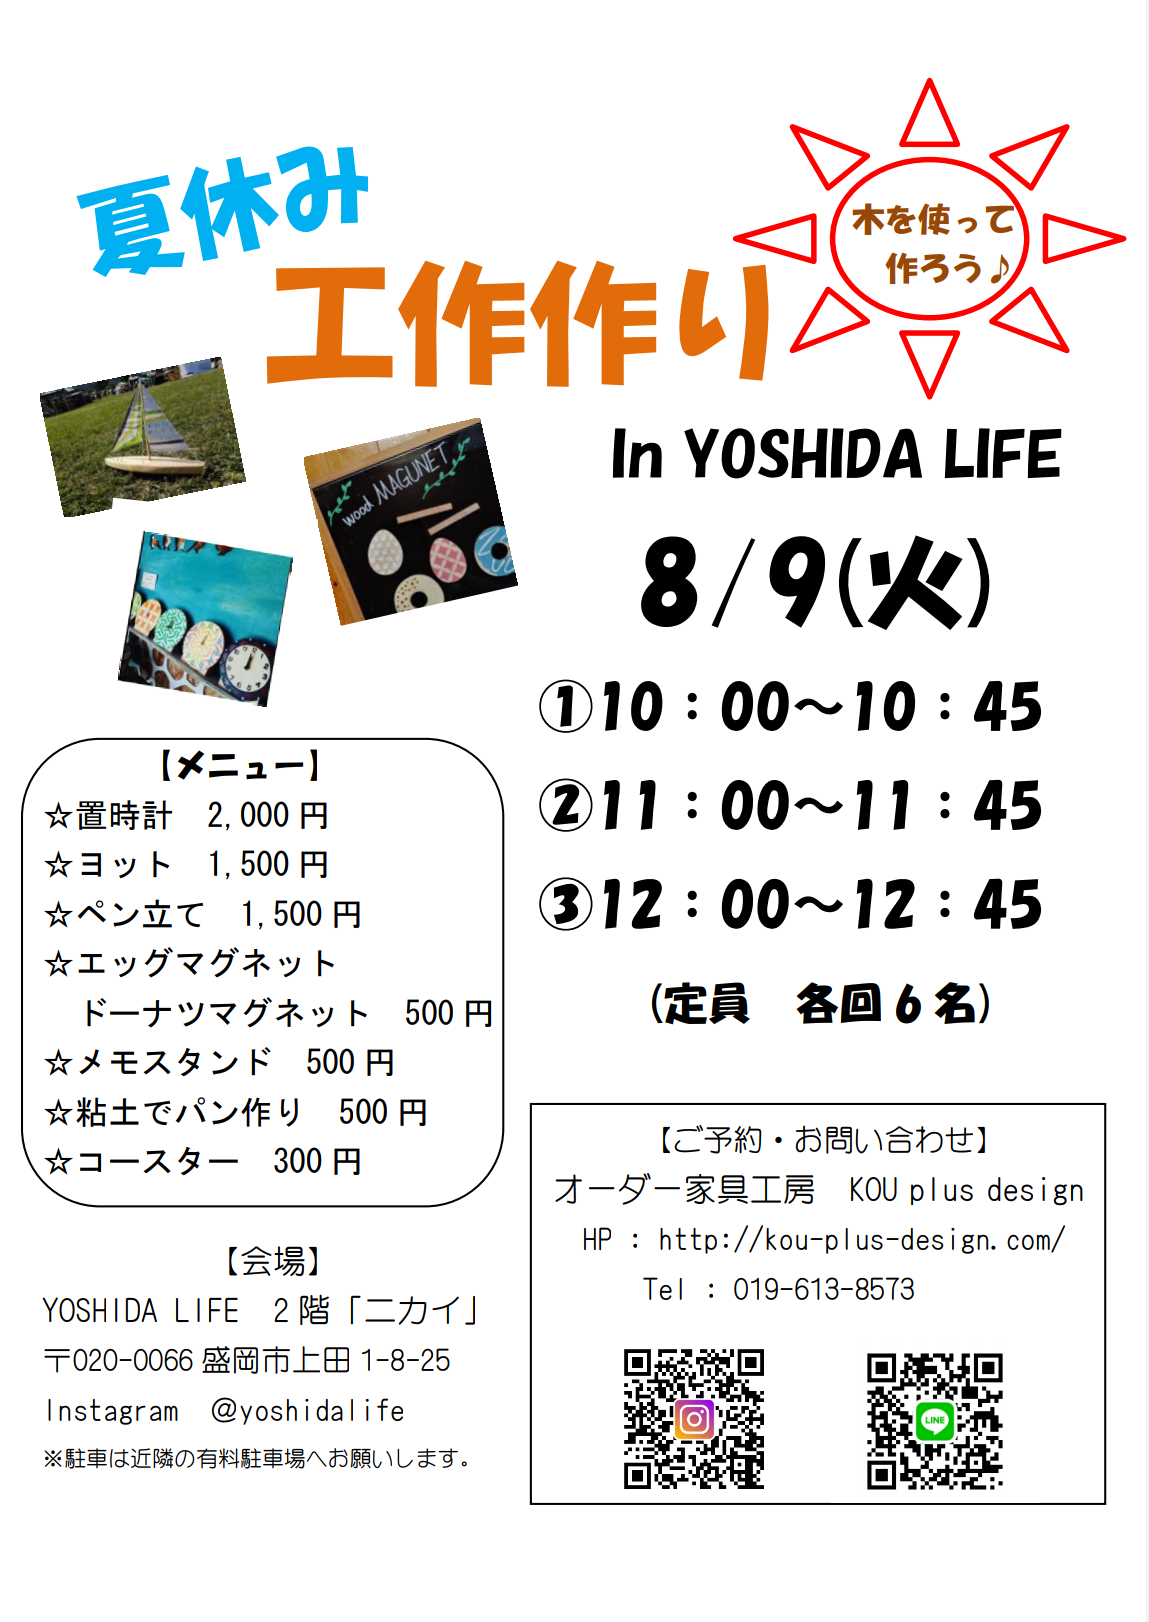 夏休み工作作り in YOSHIDA LIFE「ニカイ」 を開催します。